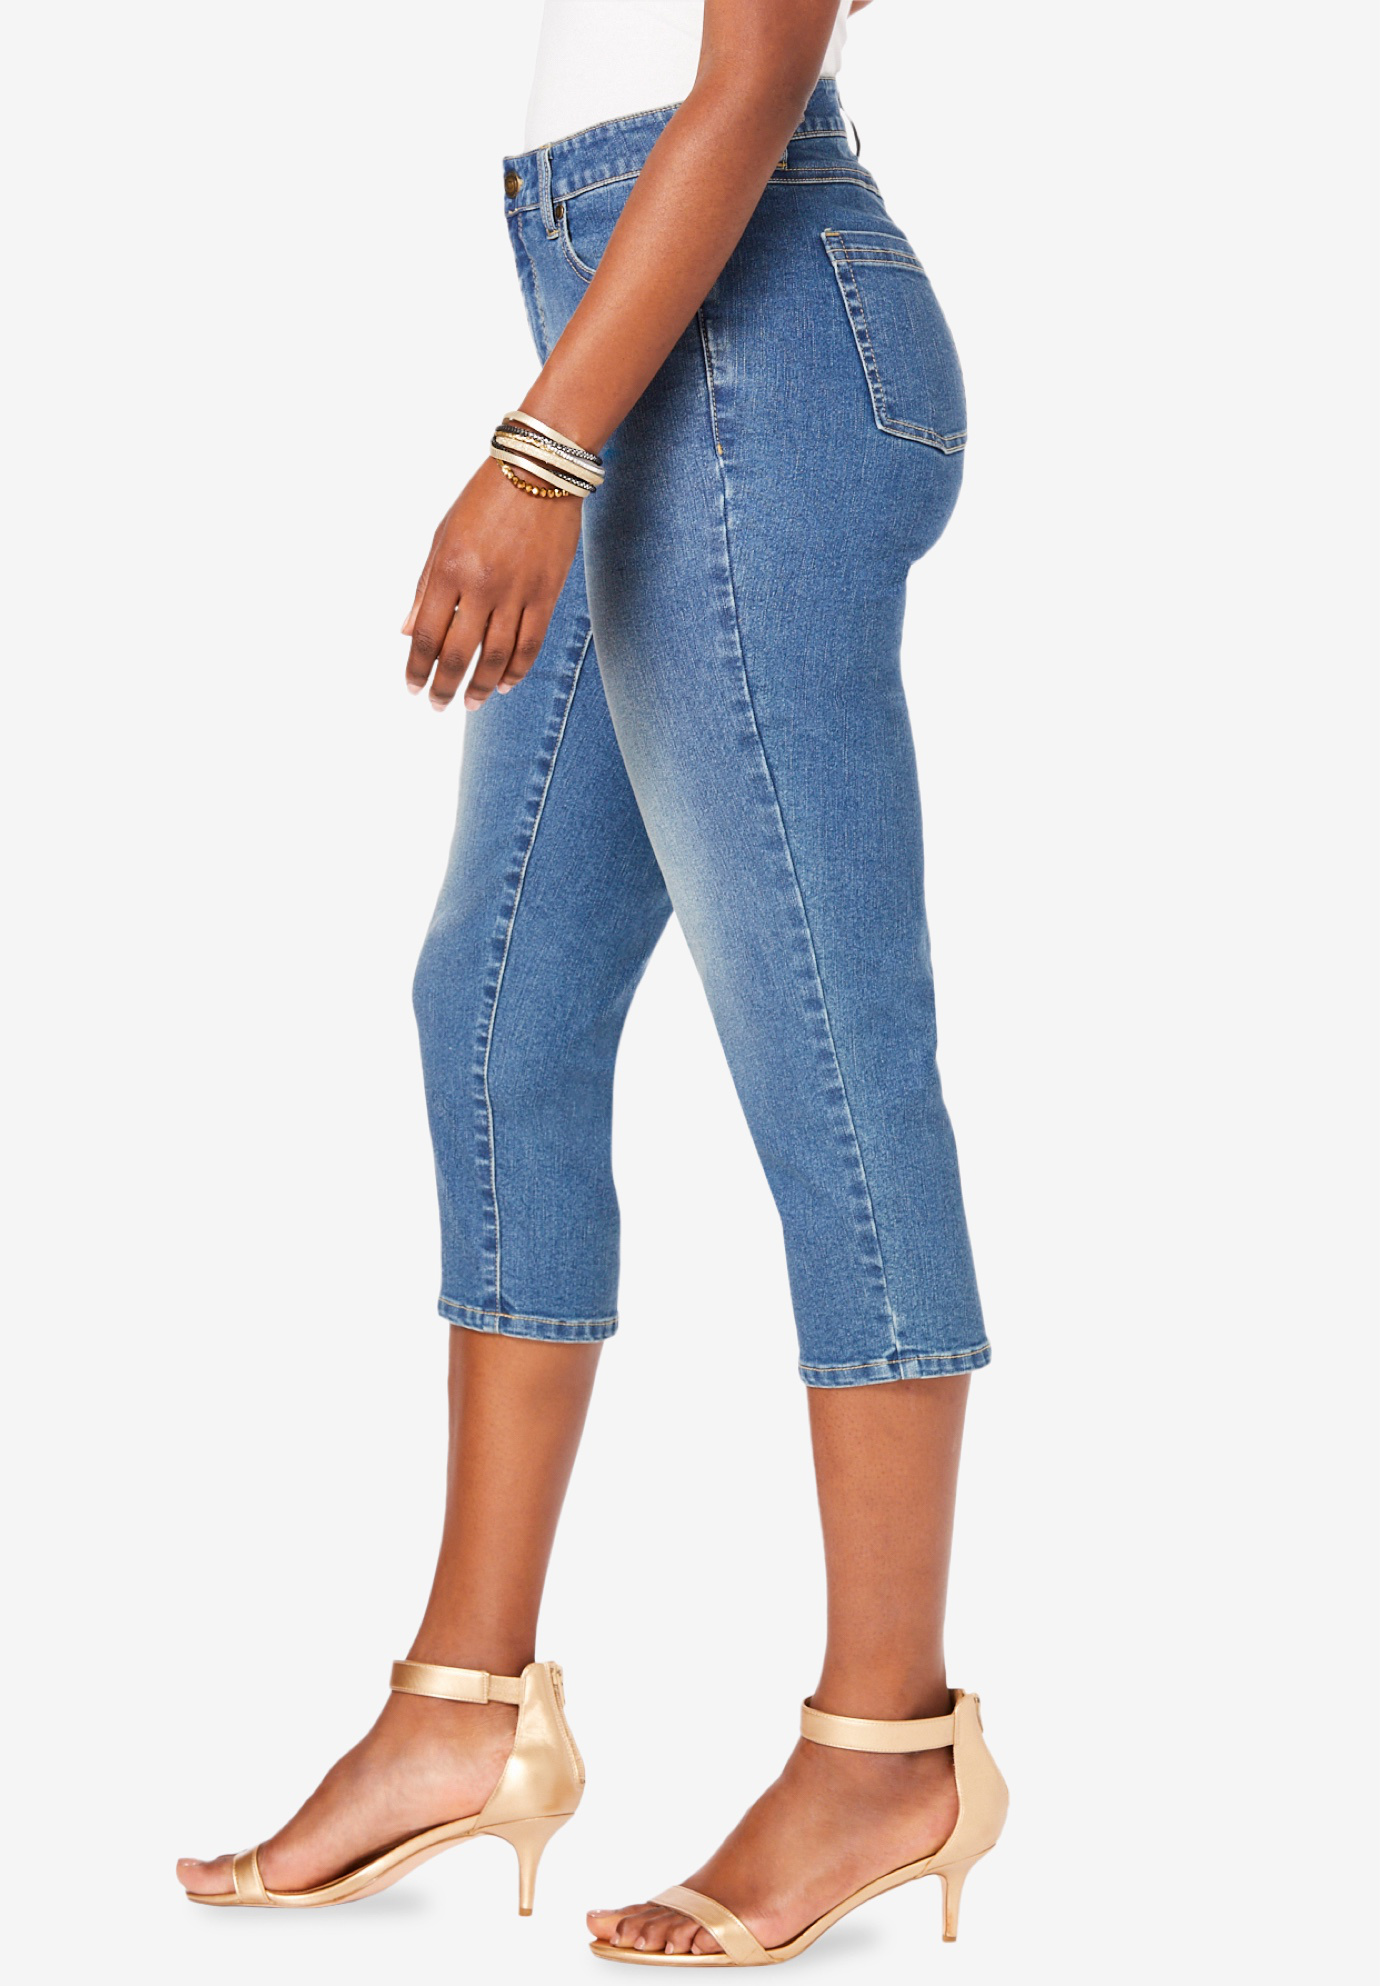 Roaman's Women's Plus Size Invisible Stretch Contour Capri Jean Jeans - image 4 of 6